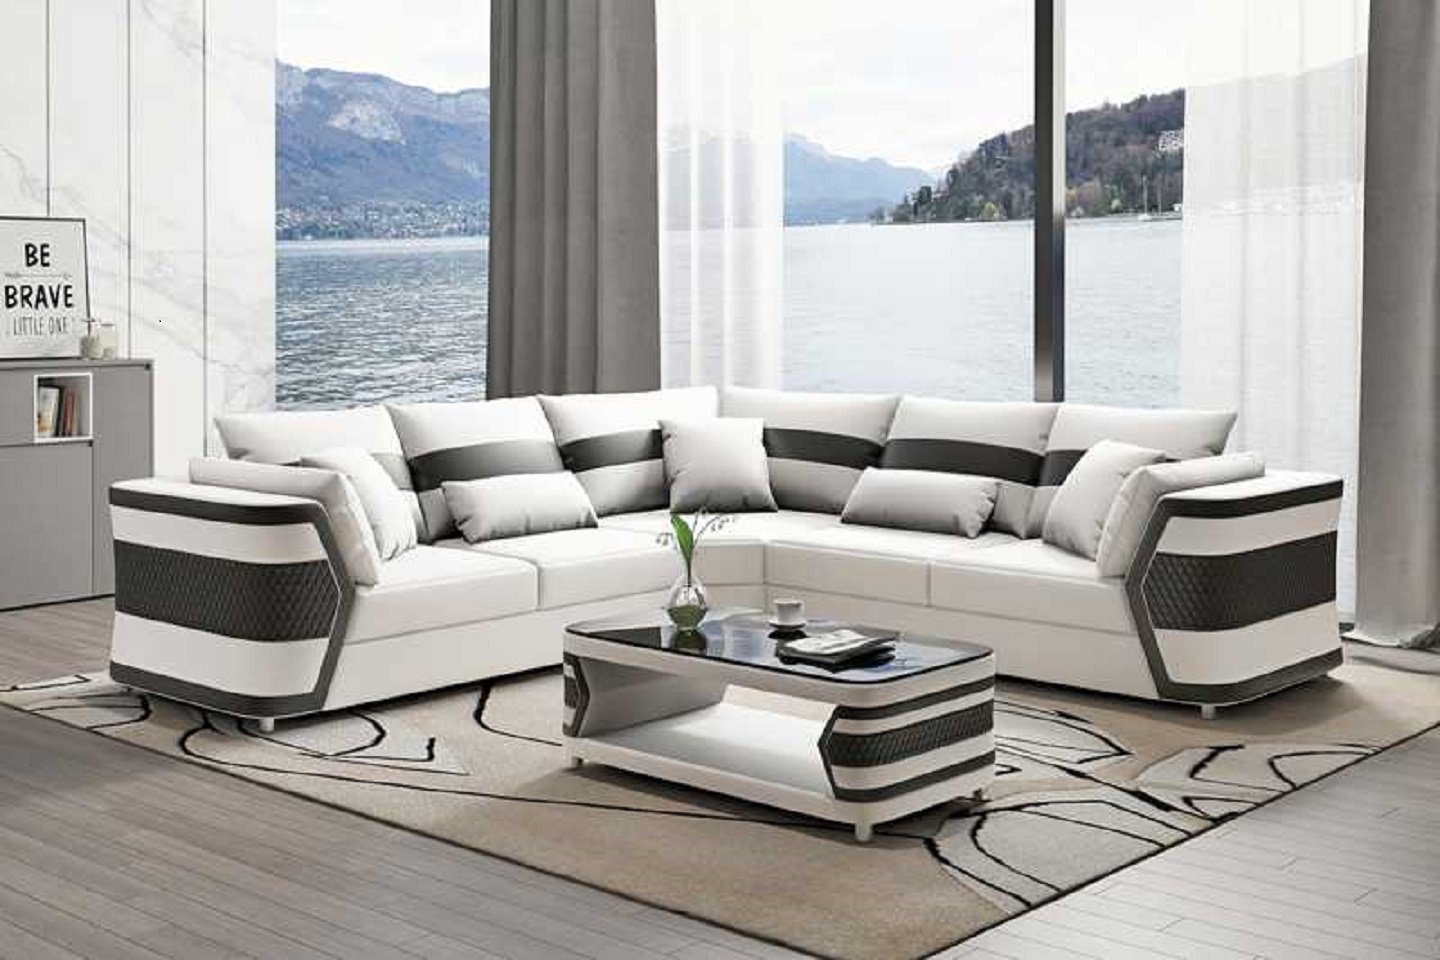 JVmoebel Ecksofa Luxus Ledersofa 3 Made Couch Weiß Wohnzimmer Sofa in Modern, Teile, Ecksofa Europe